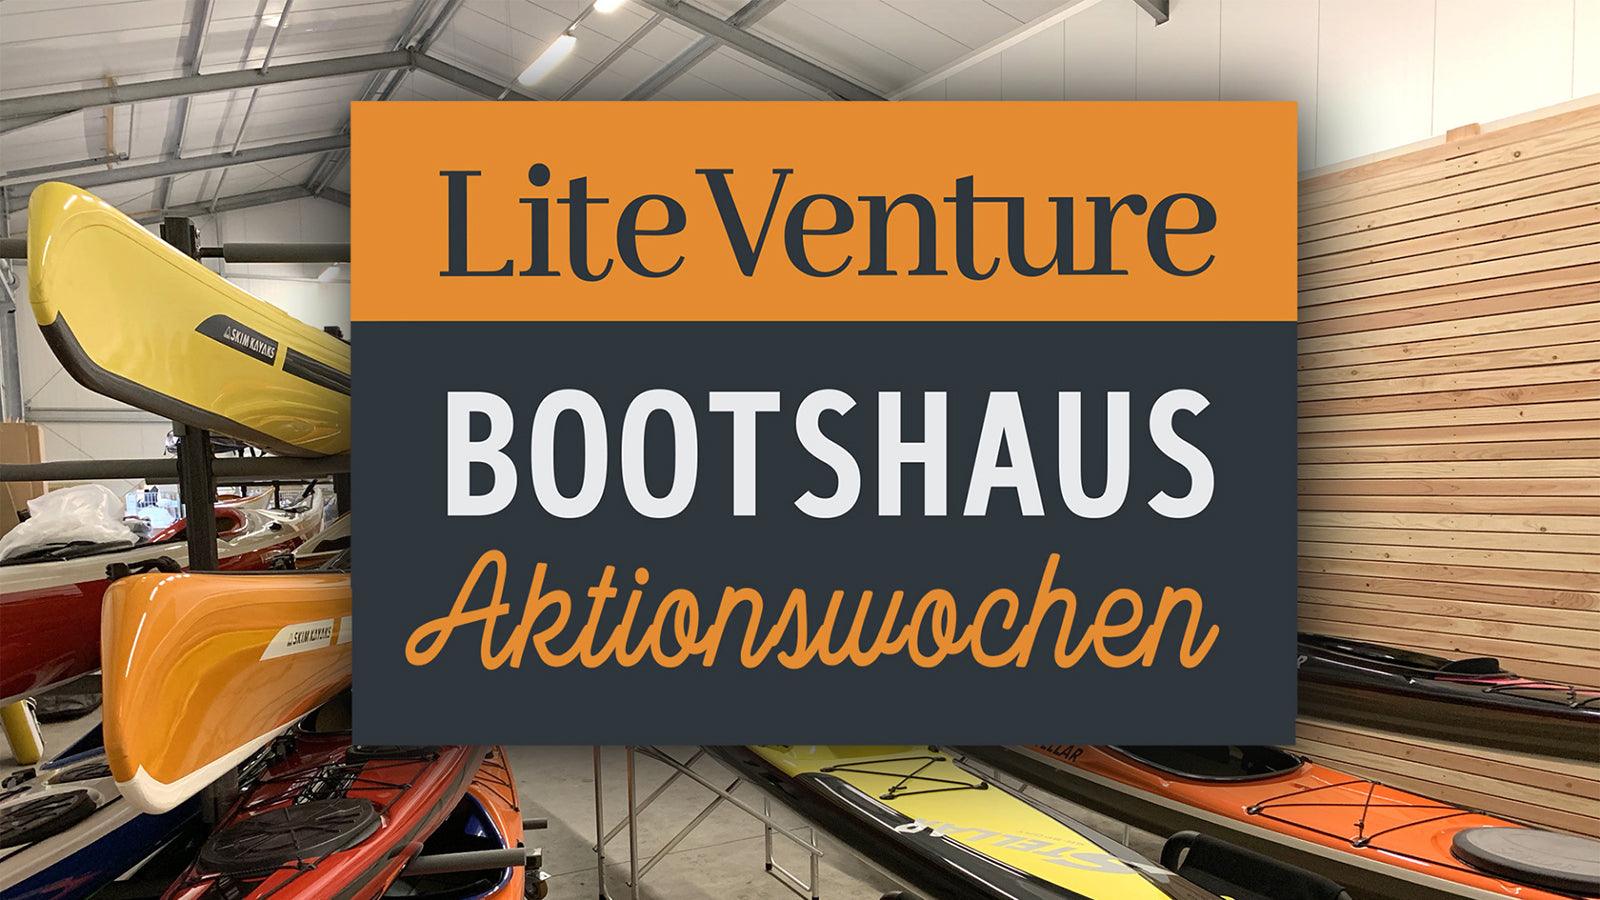 Titelbild zu " Aktionswochen im Lite Venture Bootshaus " auf Lite Venture ( www.liteventure.de )